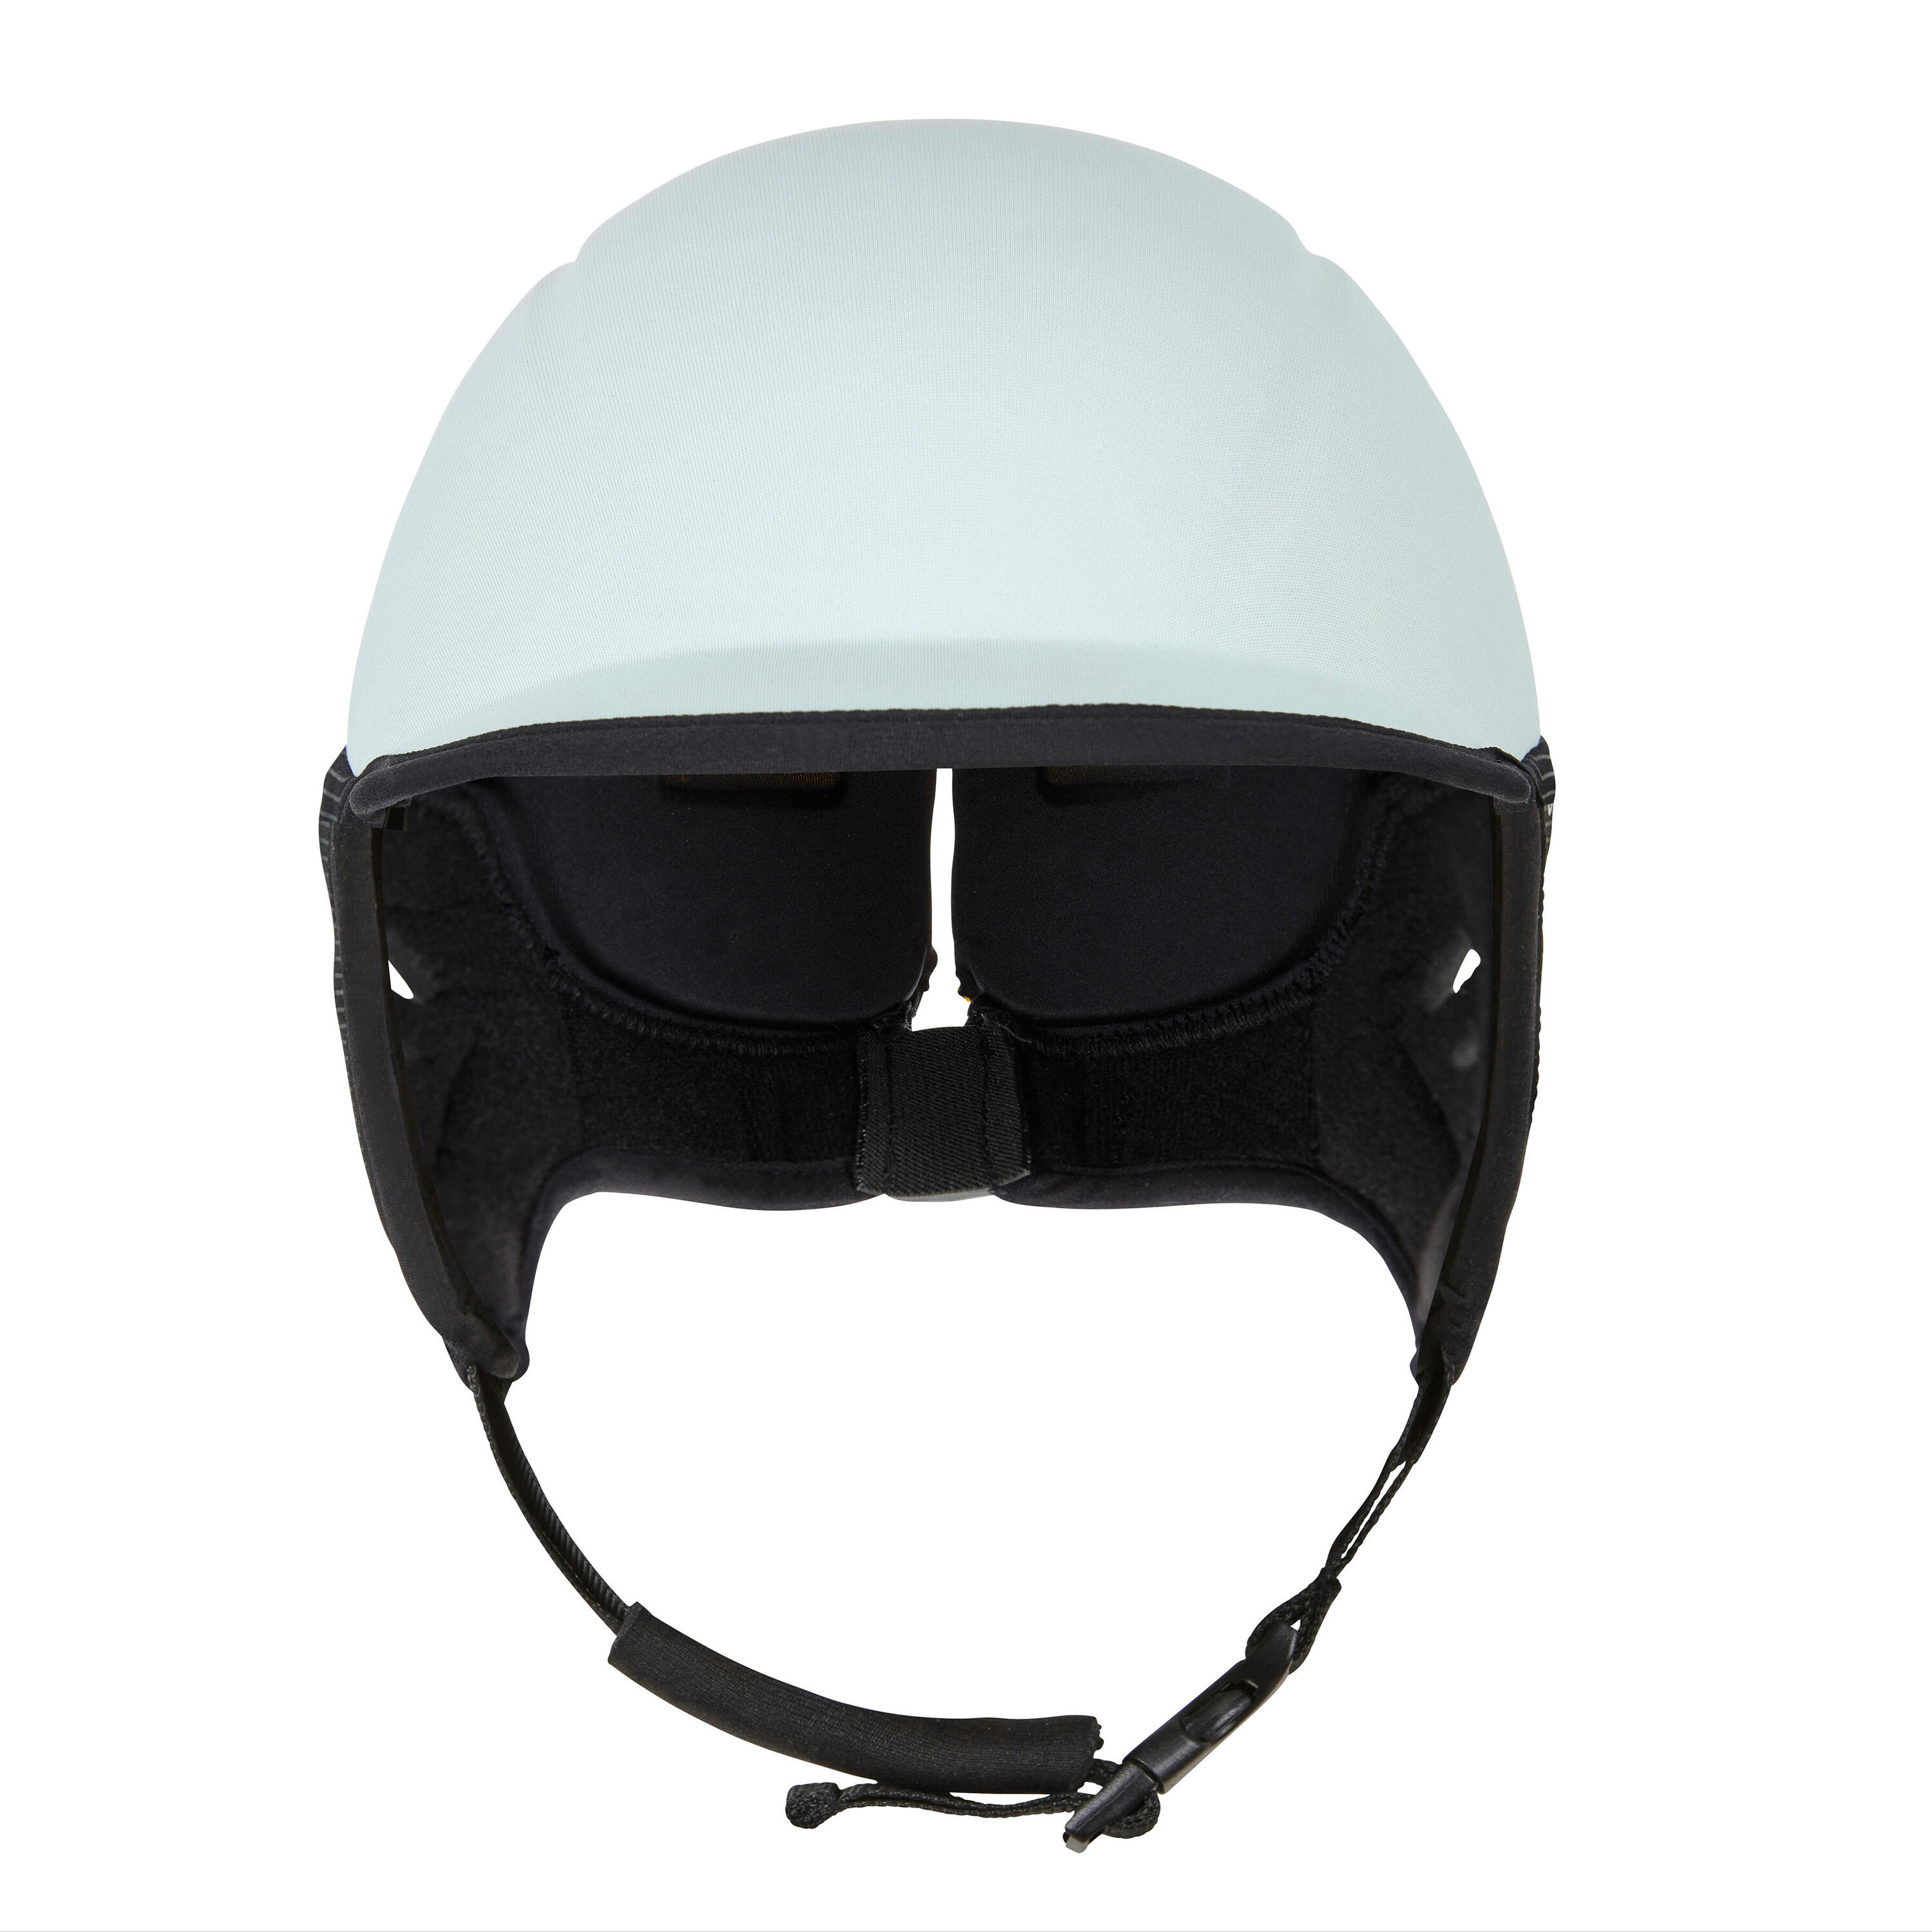 Helmet for surfing. Sky blue 6/7